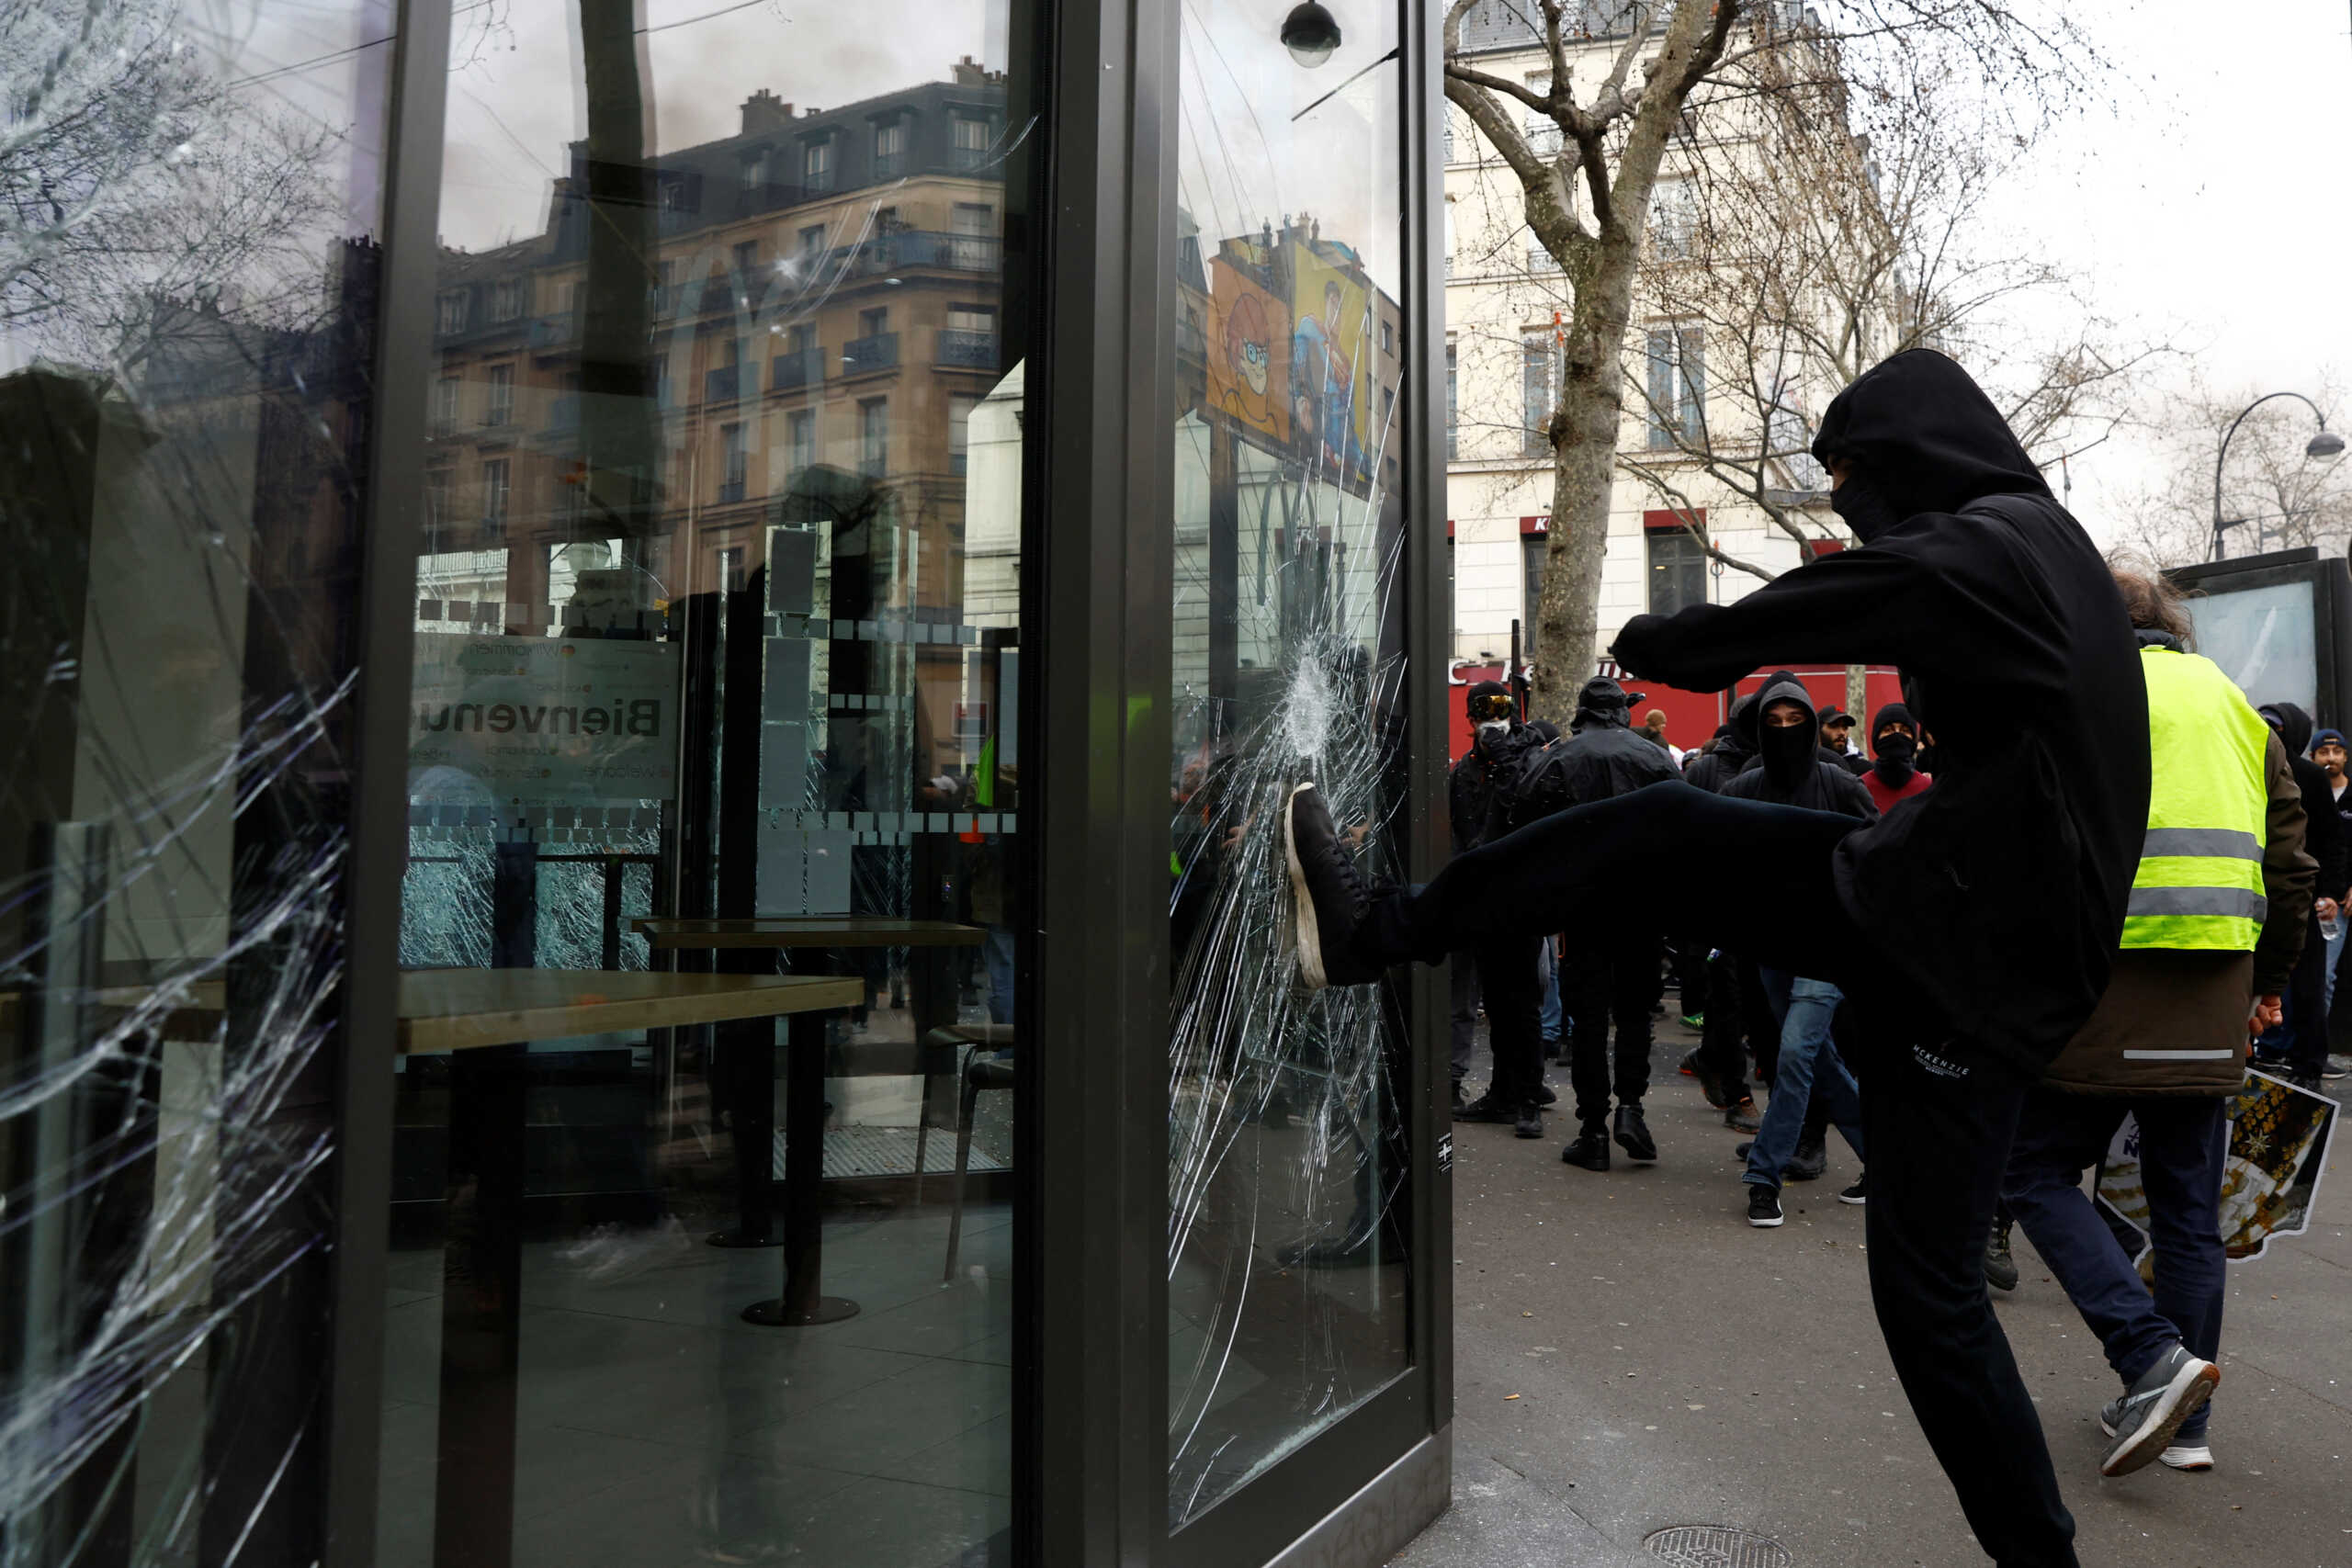 ΒΙΝΤΕΟ: Παρίσι: Σέρνουν αστυνομικό για να τον σώσουν από το εξαγριωμένο πλήθος – 9η ημέρα επεισοδίων